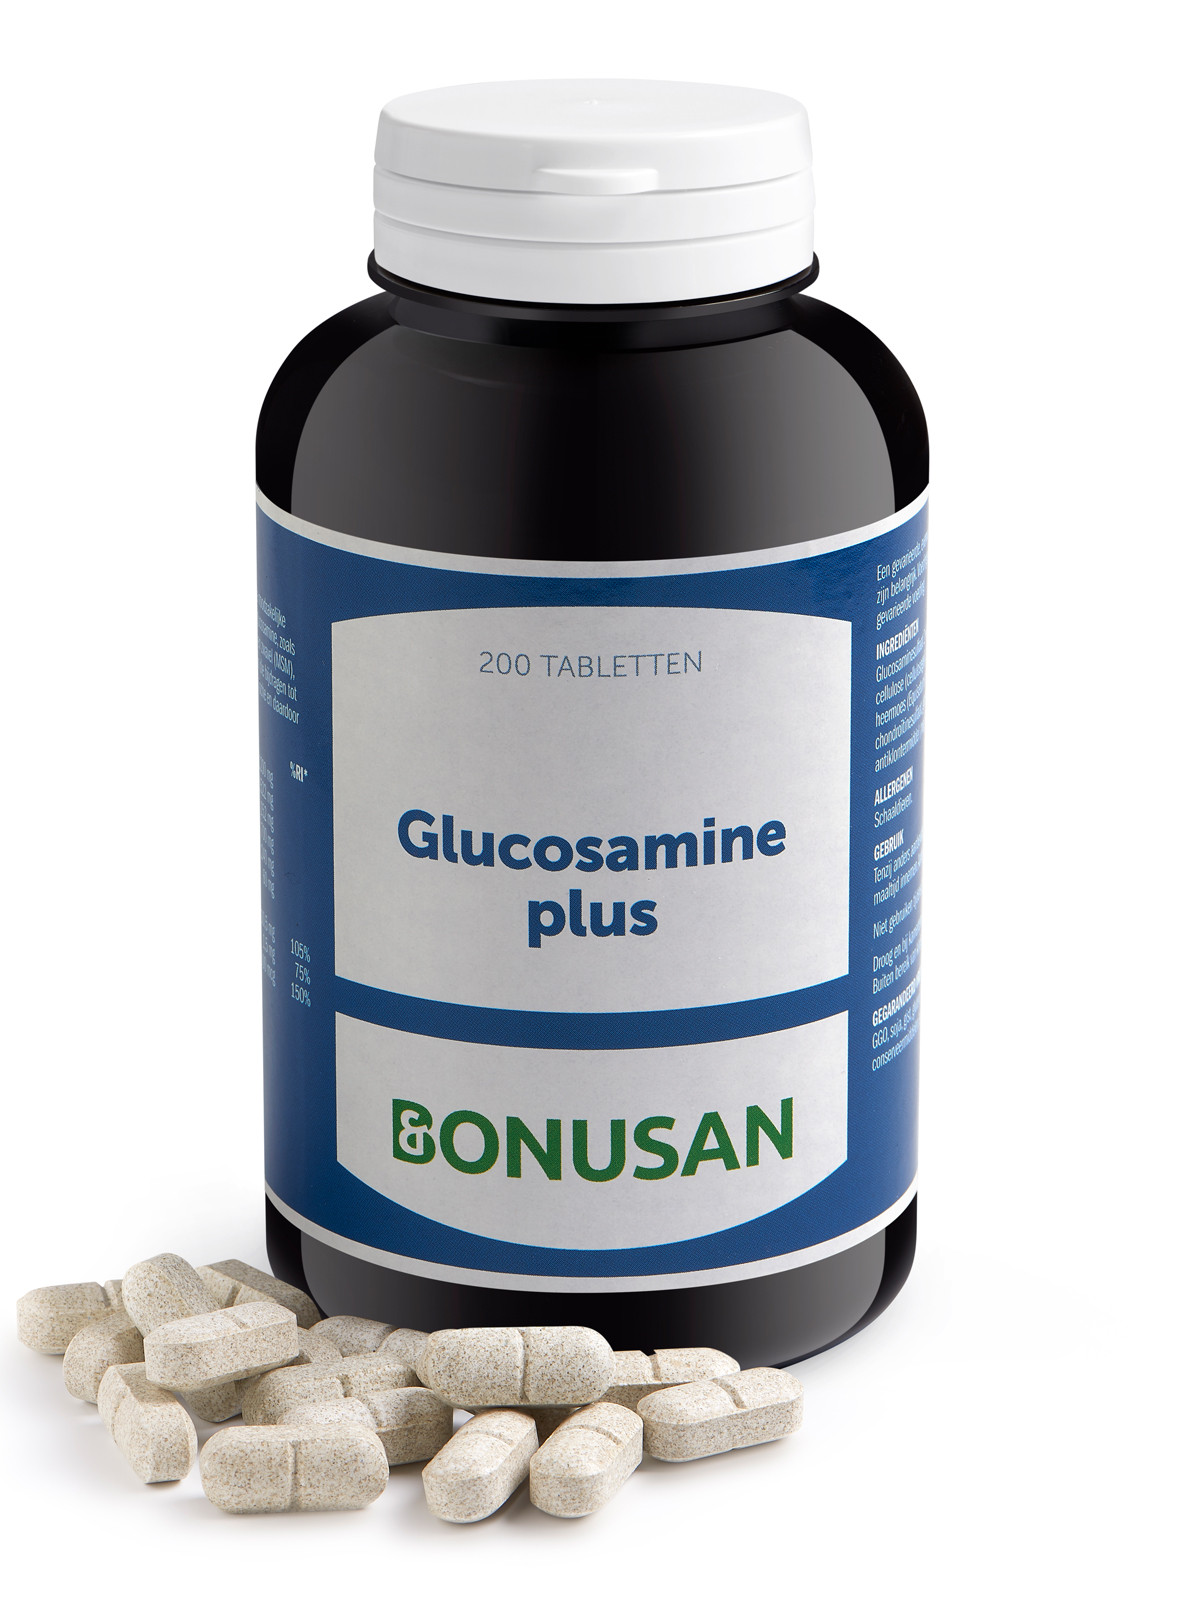 Bonusan - Glucosamine plus - 200 stuks